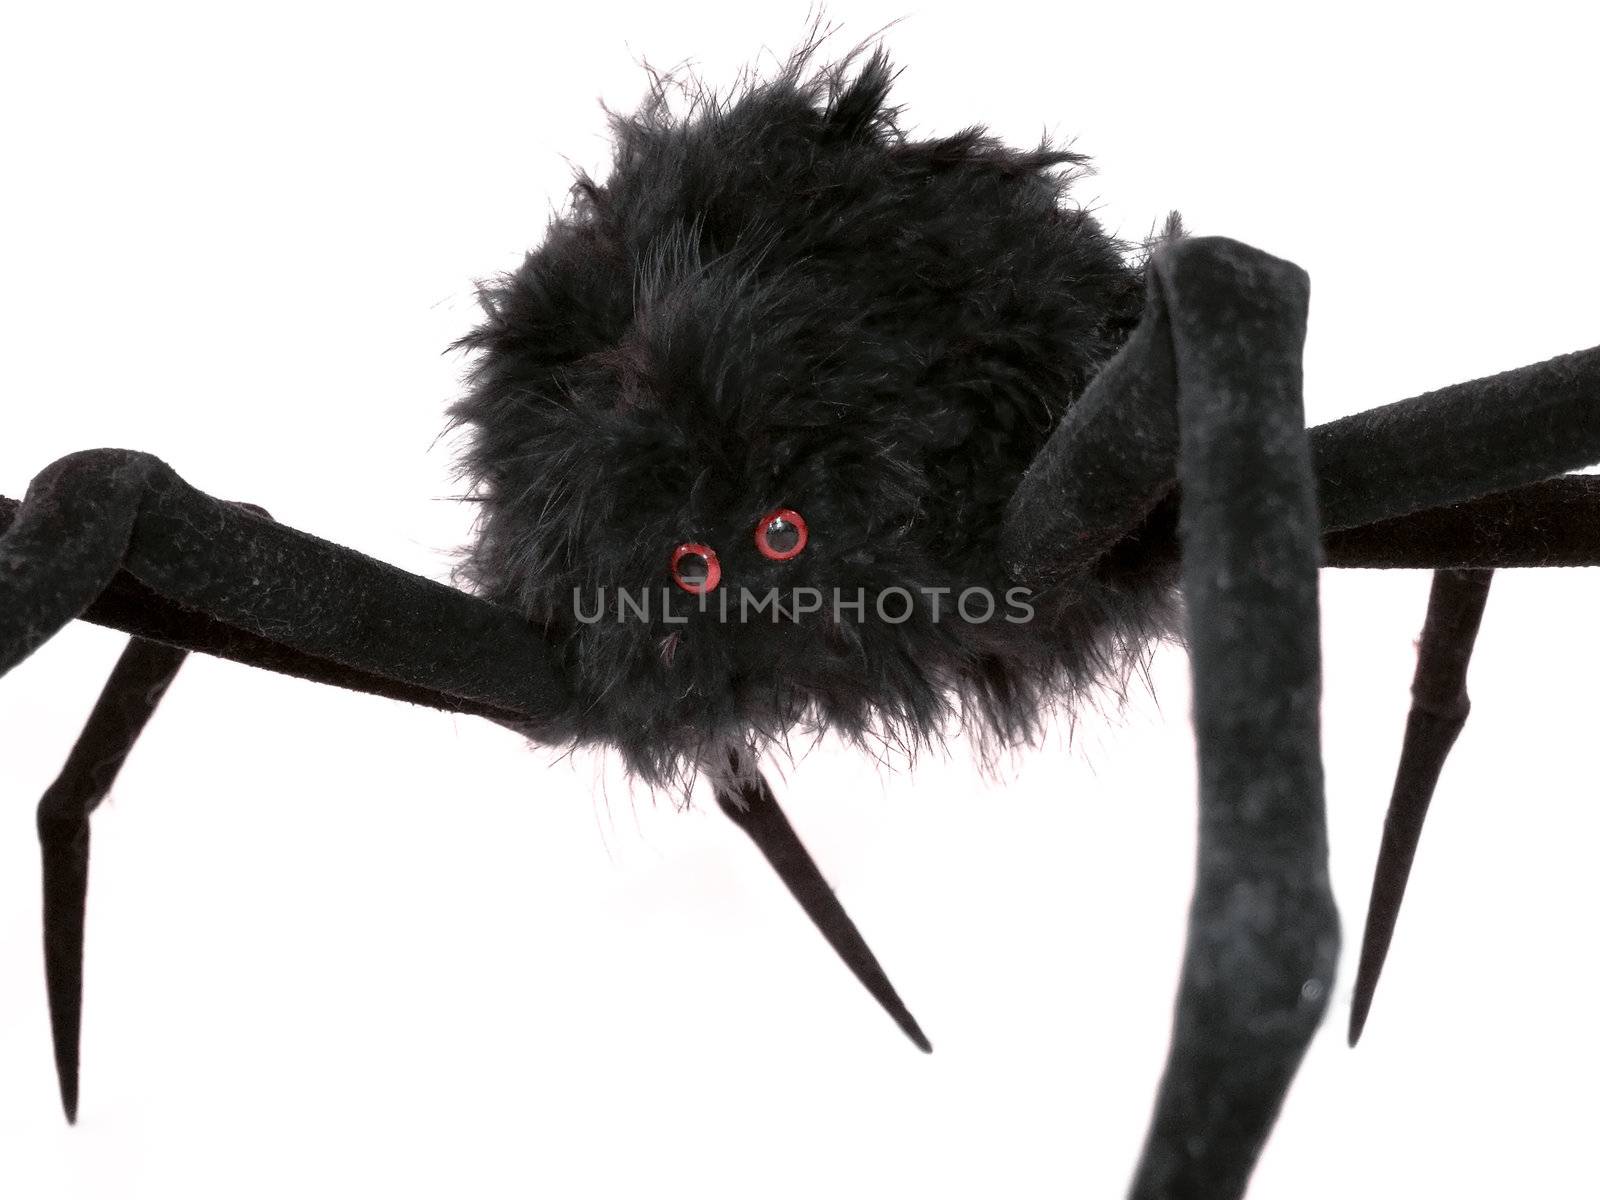 Black spider toy  by PauloResende